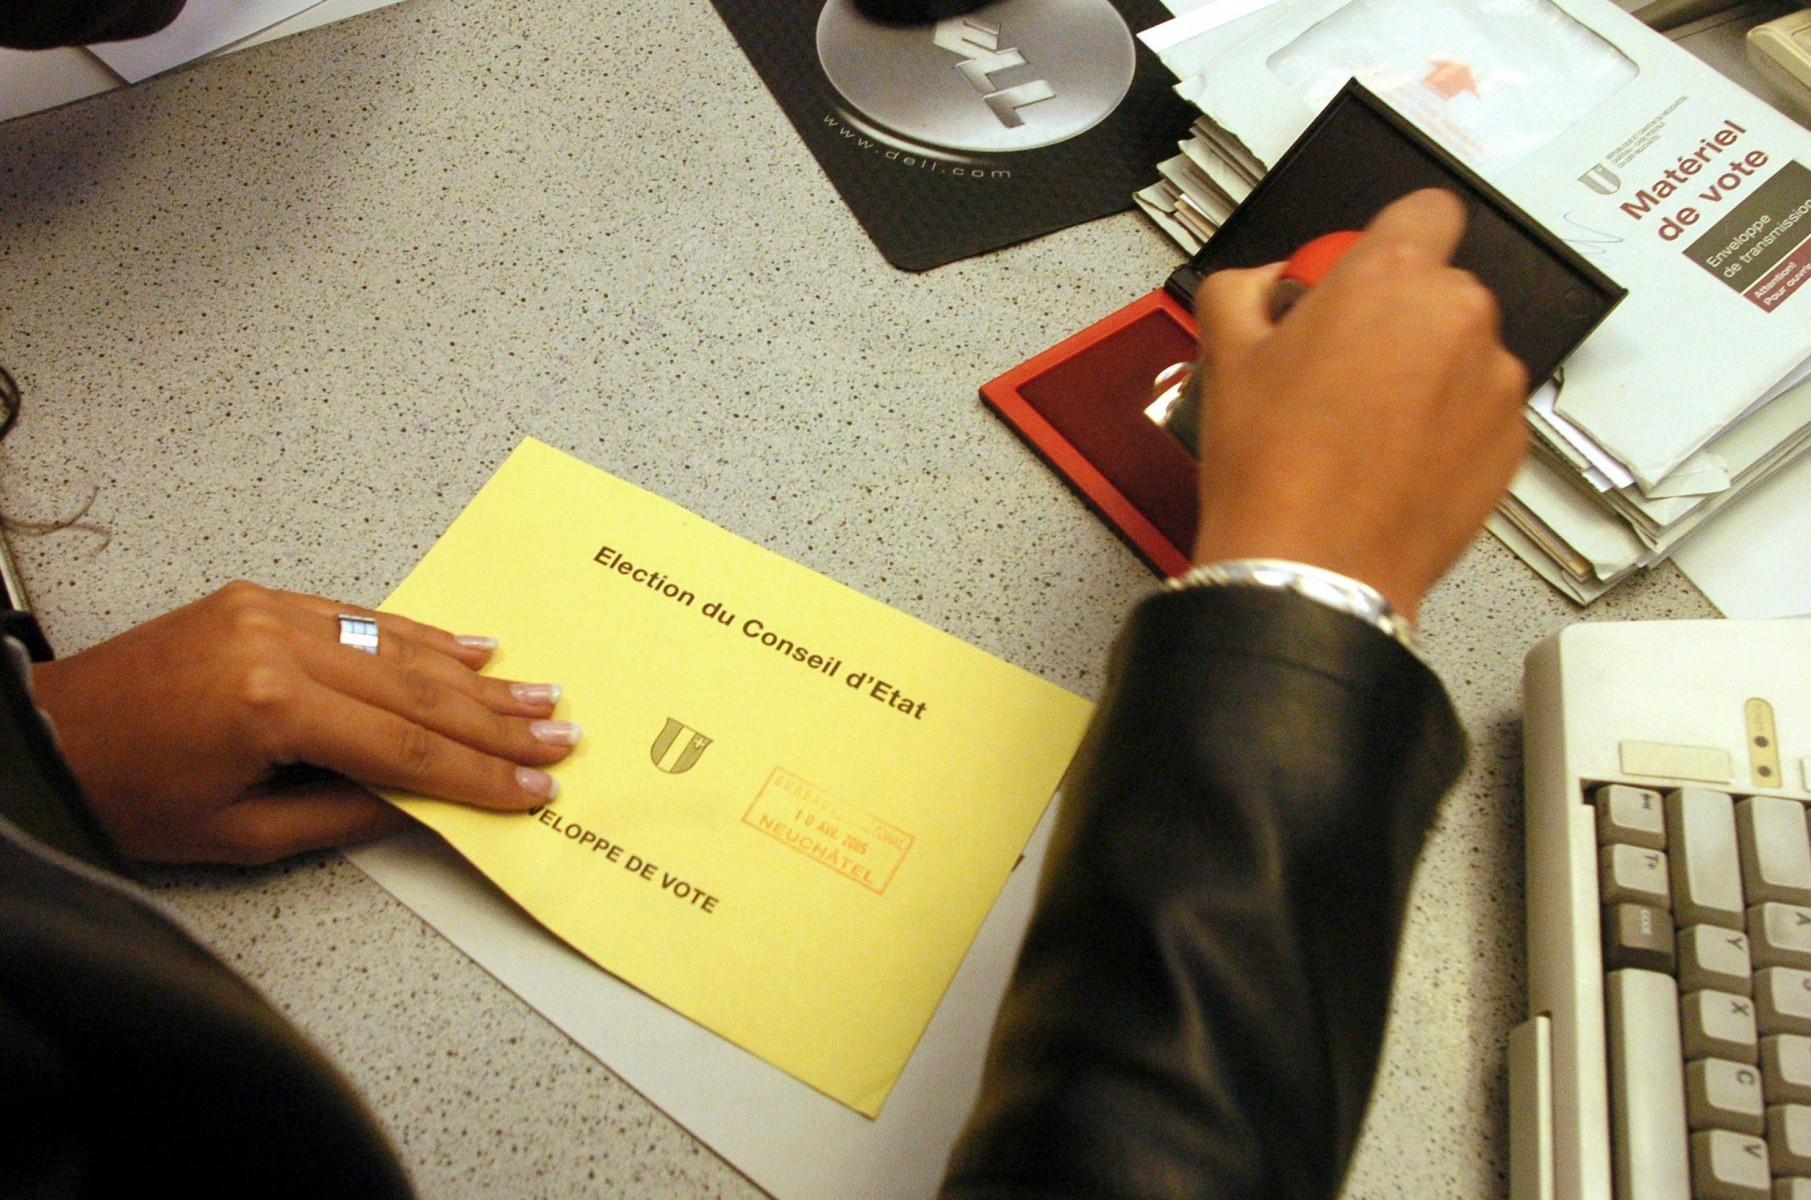 Bureau de vote dimanche matin a Neuchatel



Neuchatel, le 10 avril 2005

Photo: David Marchon VOTATIONS